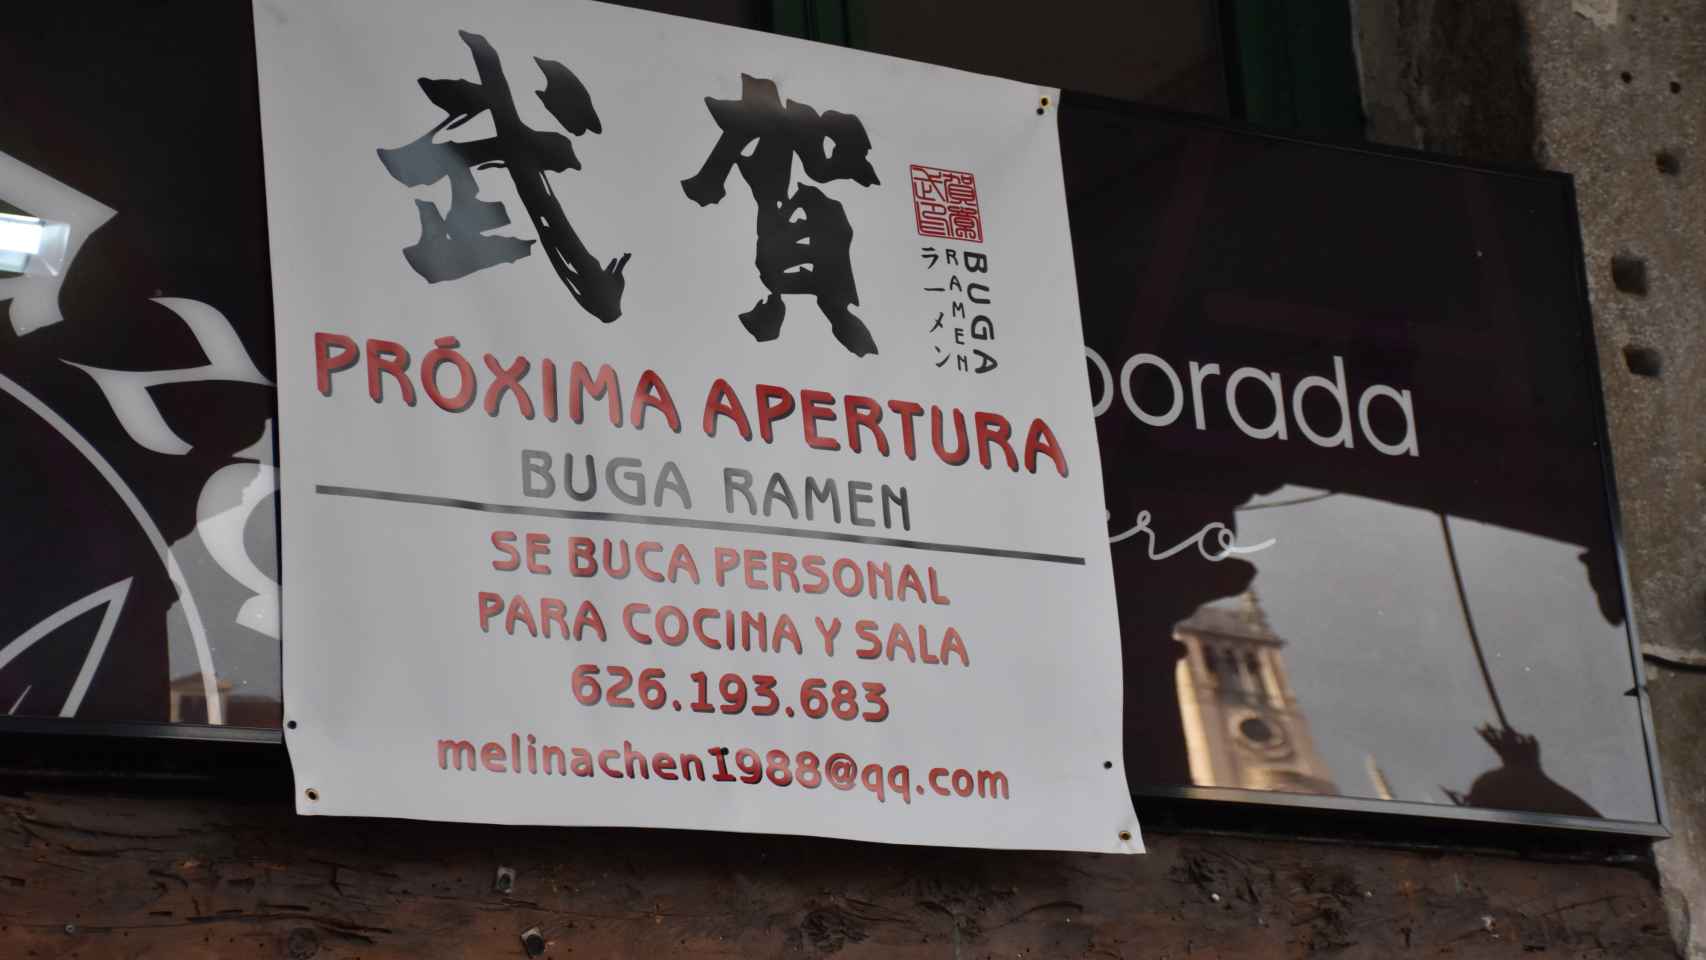 El cartel de próxima apertura de Buga Ramen en Valladolid